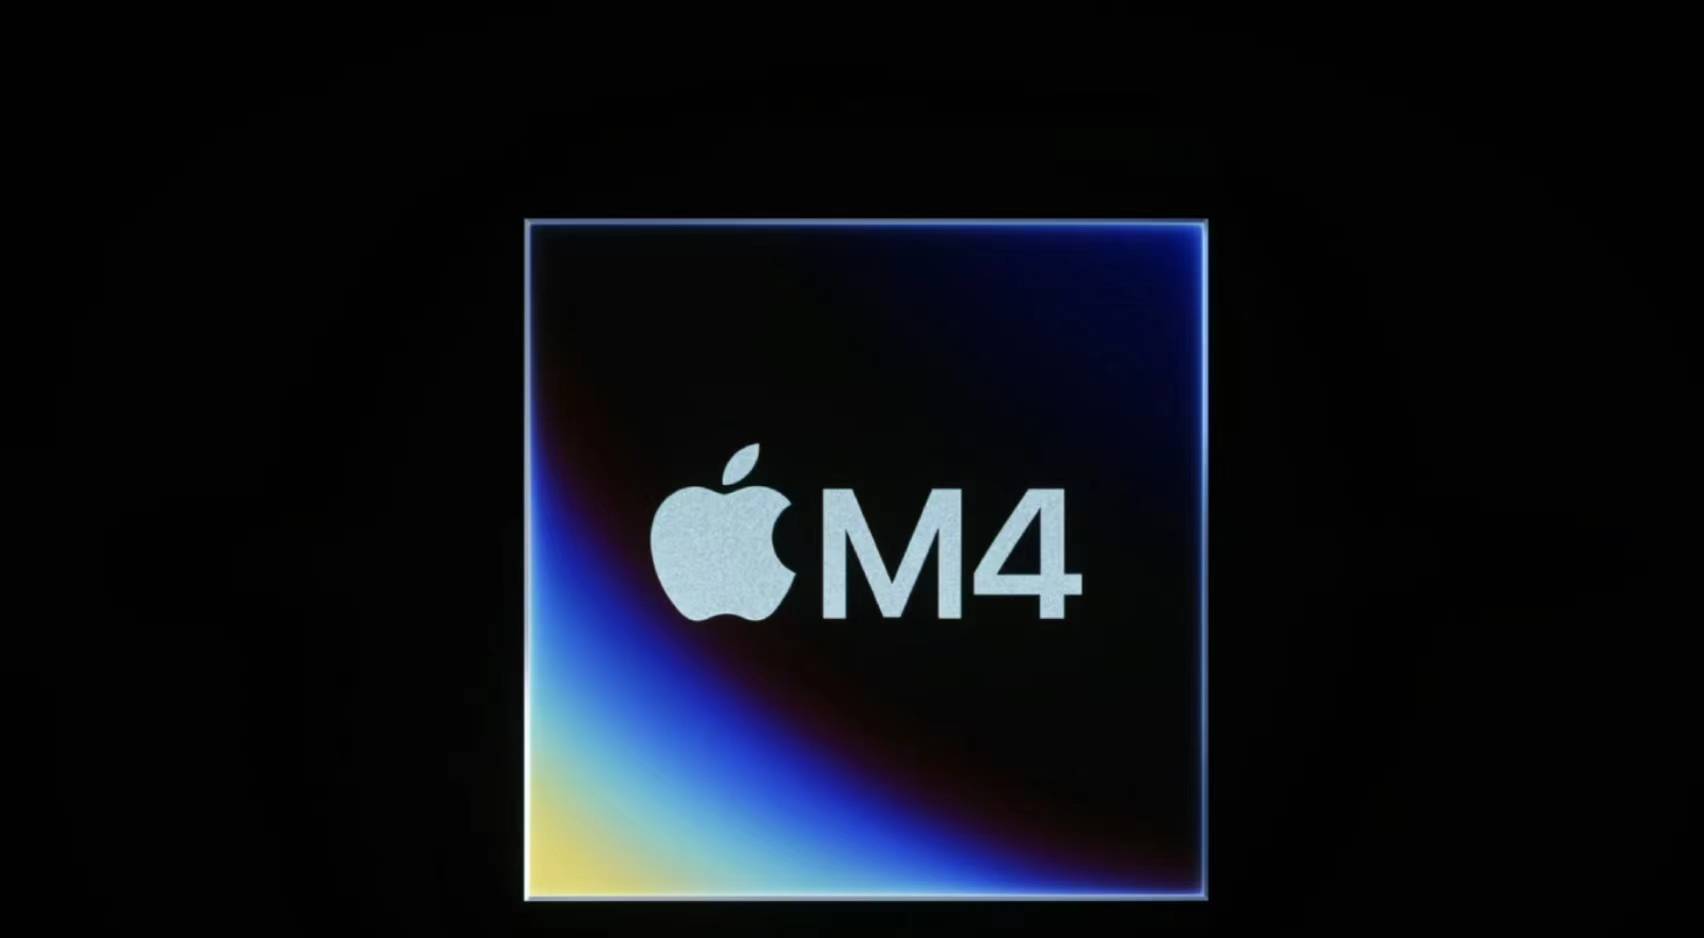 新款iPad Pro搭载M4芯片